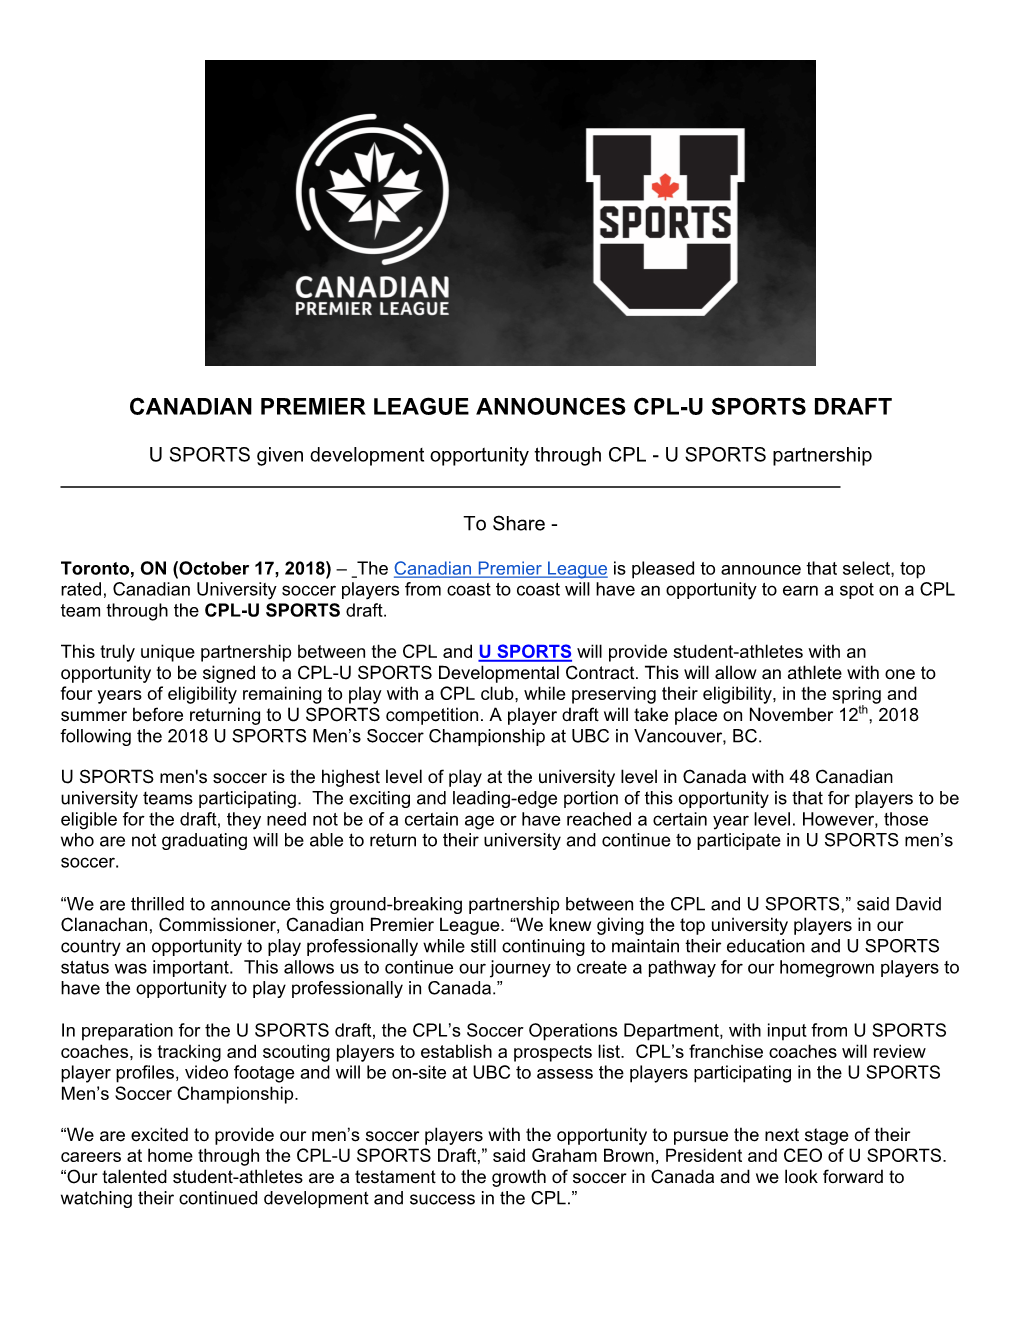 Canadian Premier League Announces Cpl-U Sports Draft